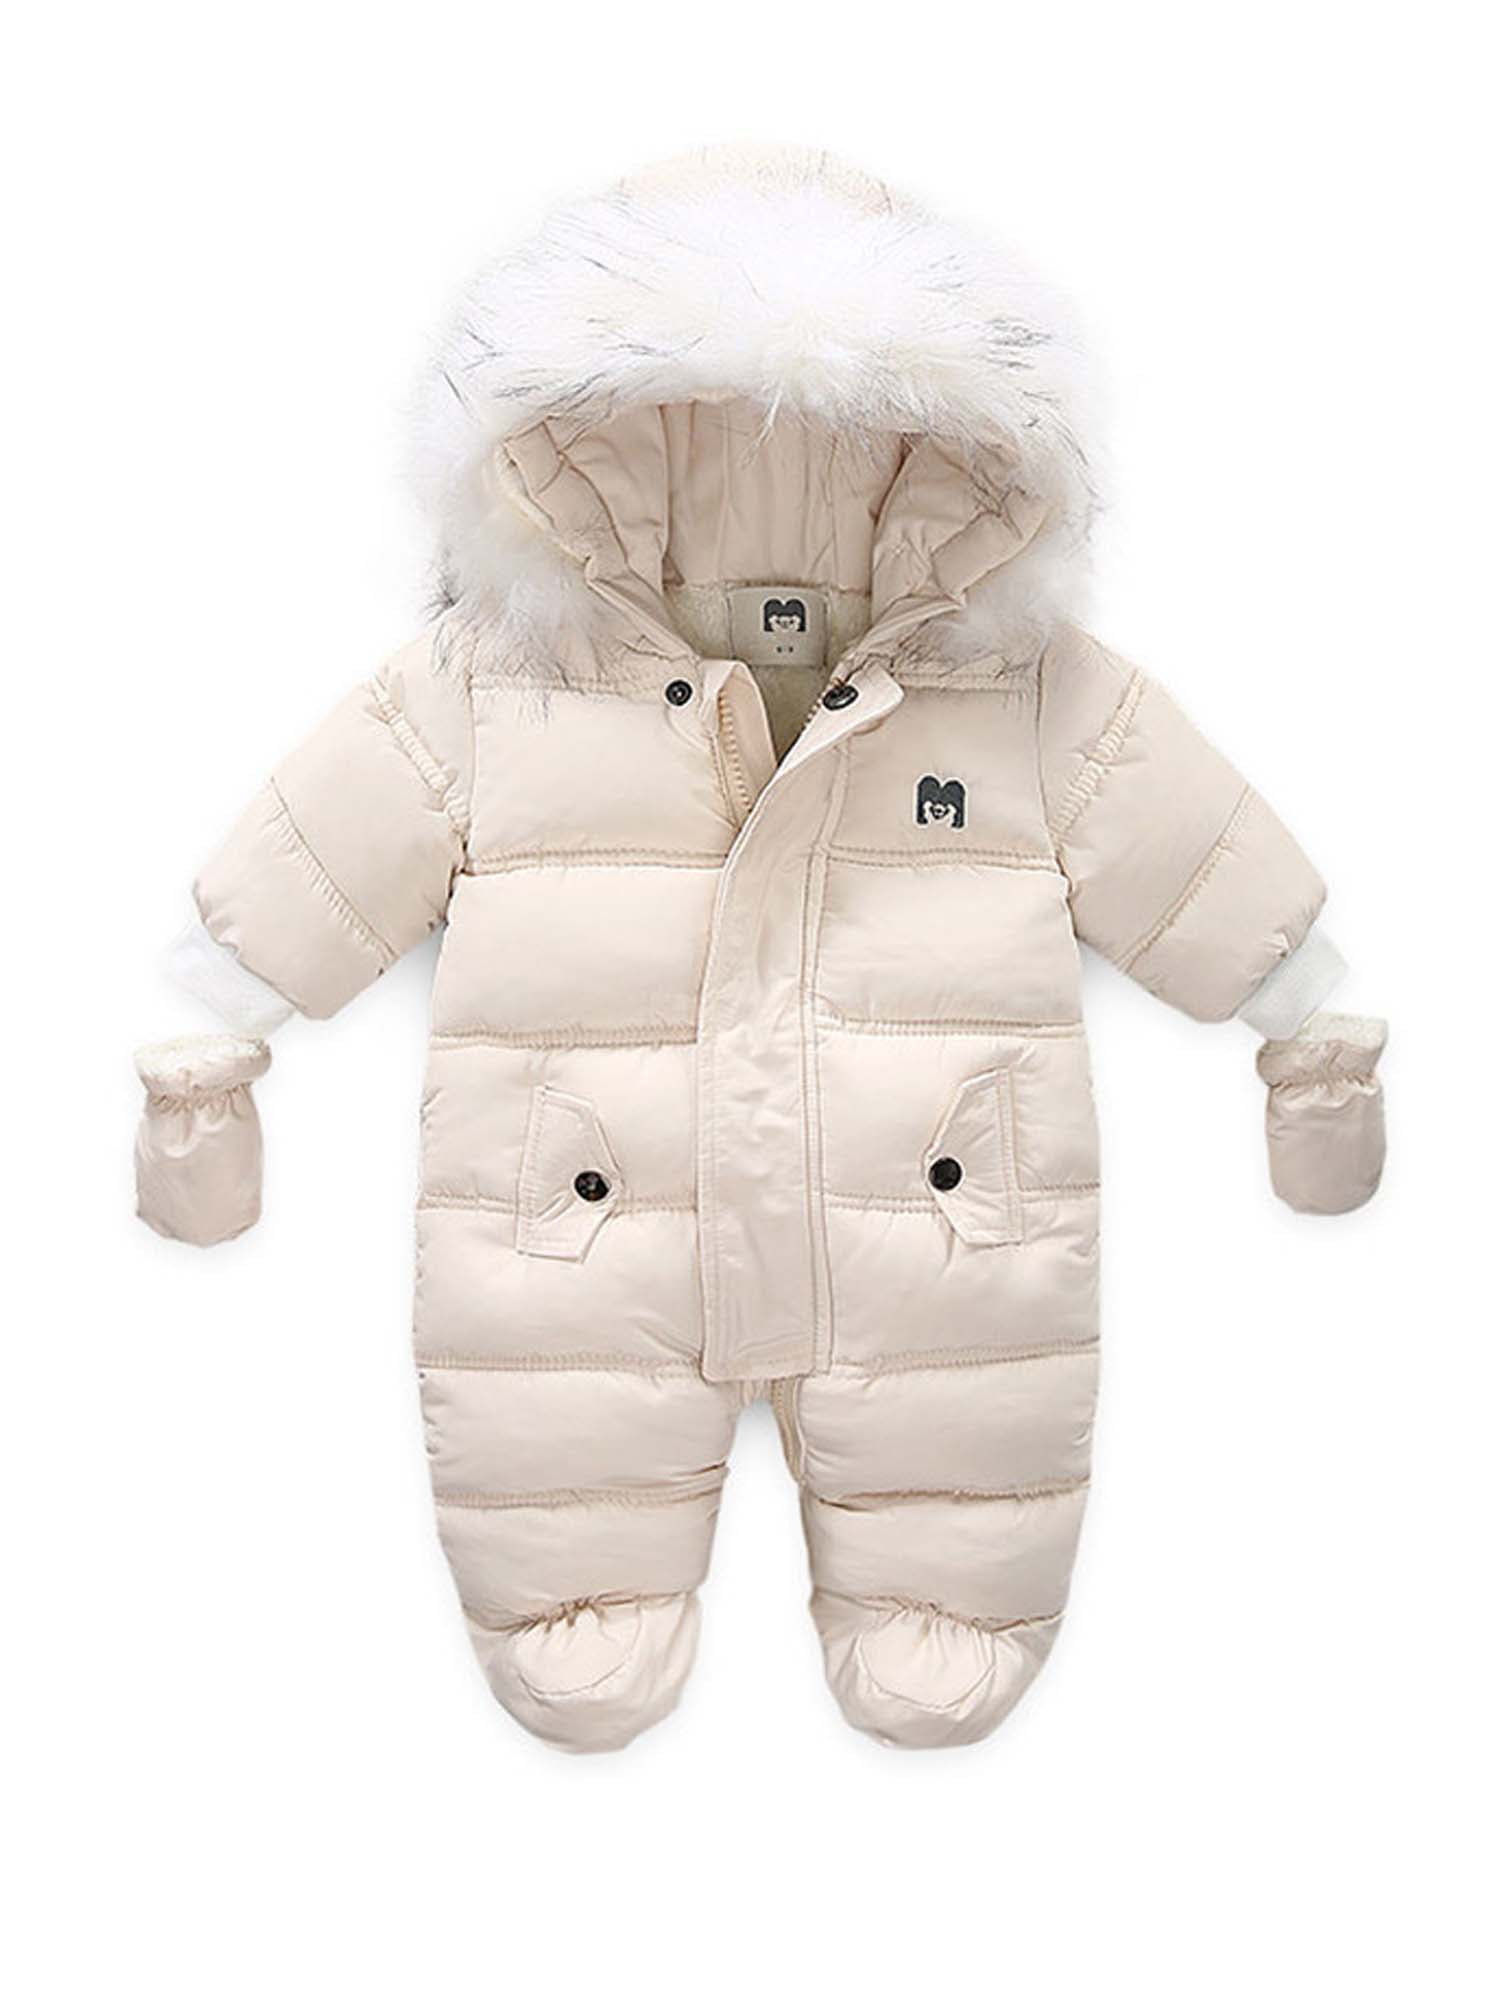 Baby Snowsuit Infant Hooded Romper Winter Jumpsuit Zipper Front